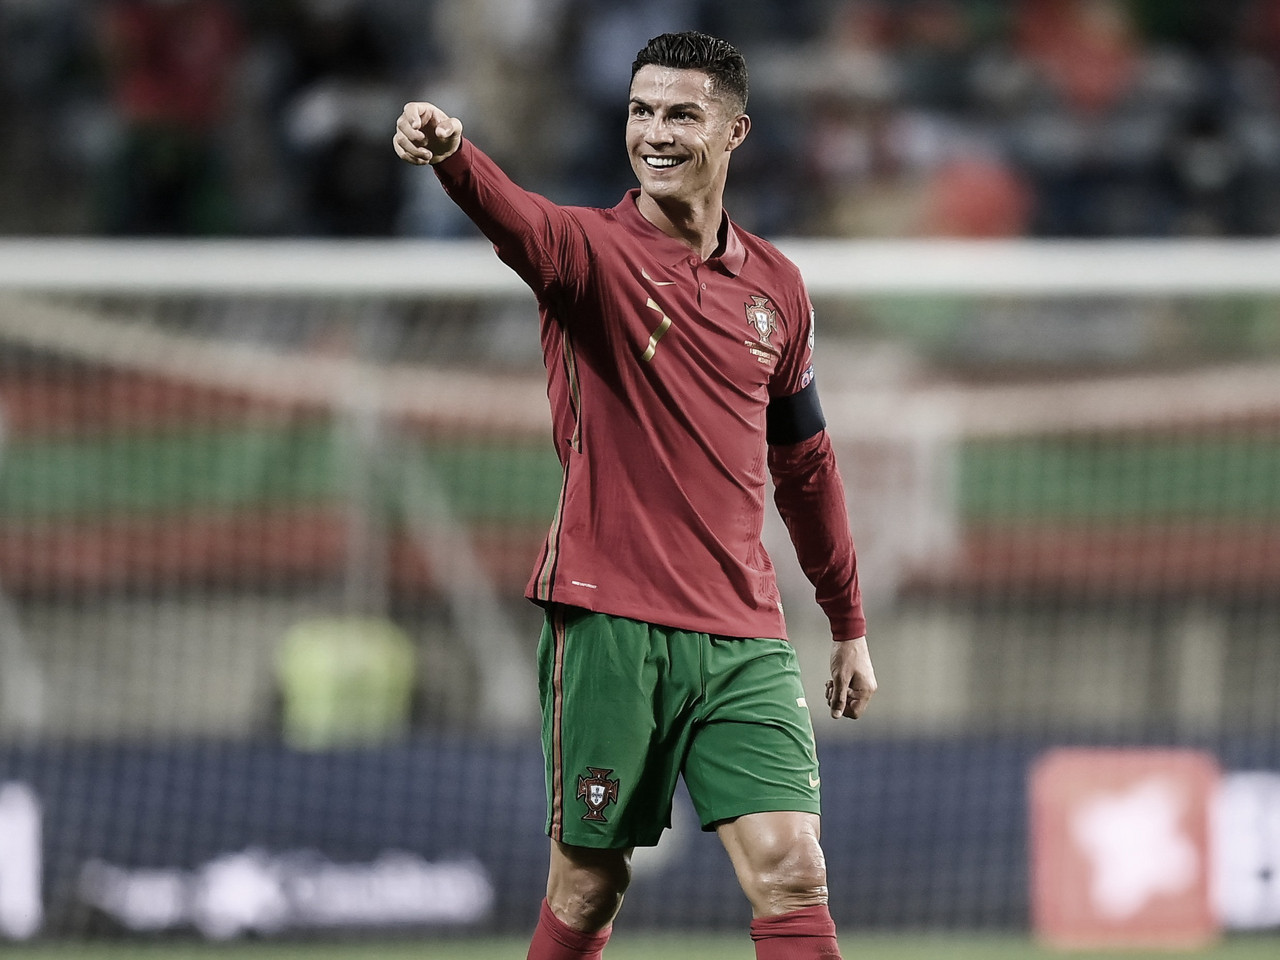 FIFA galardona a Cristiano Ronaldo con el premio especial 